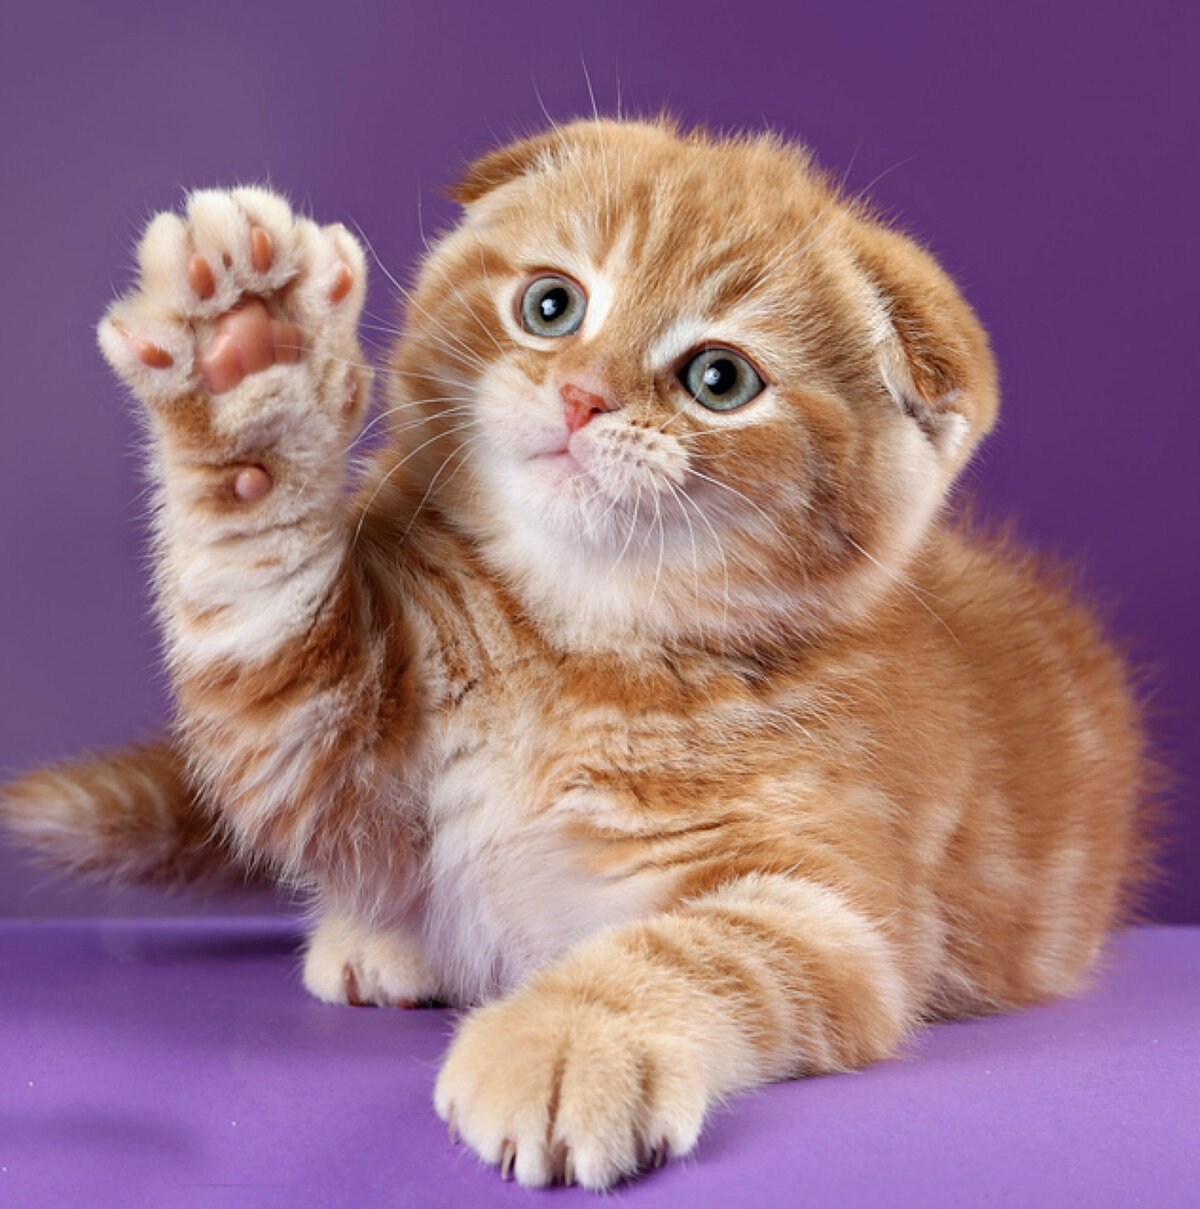 Шотландская вислоухая котята рыжие - картинки и фото koshka.top